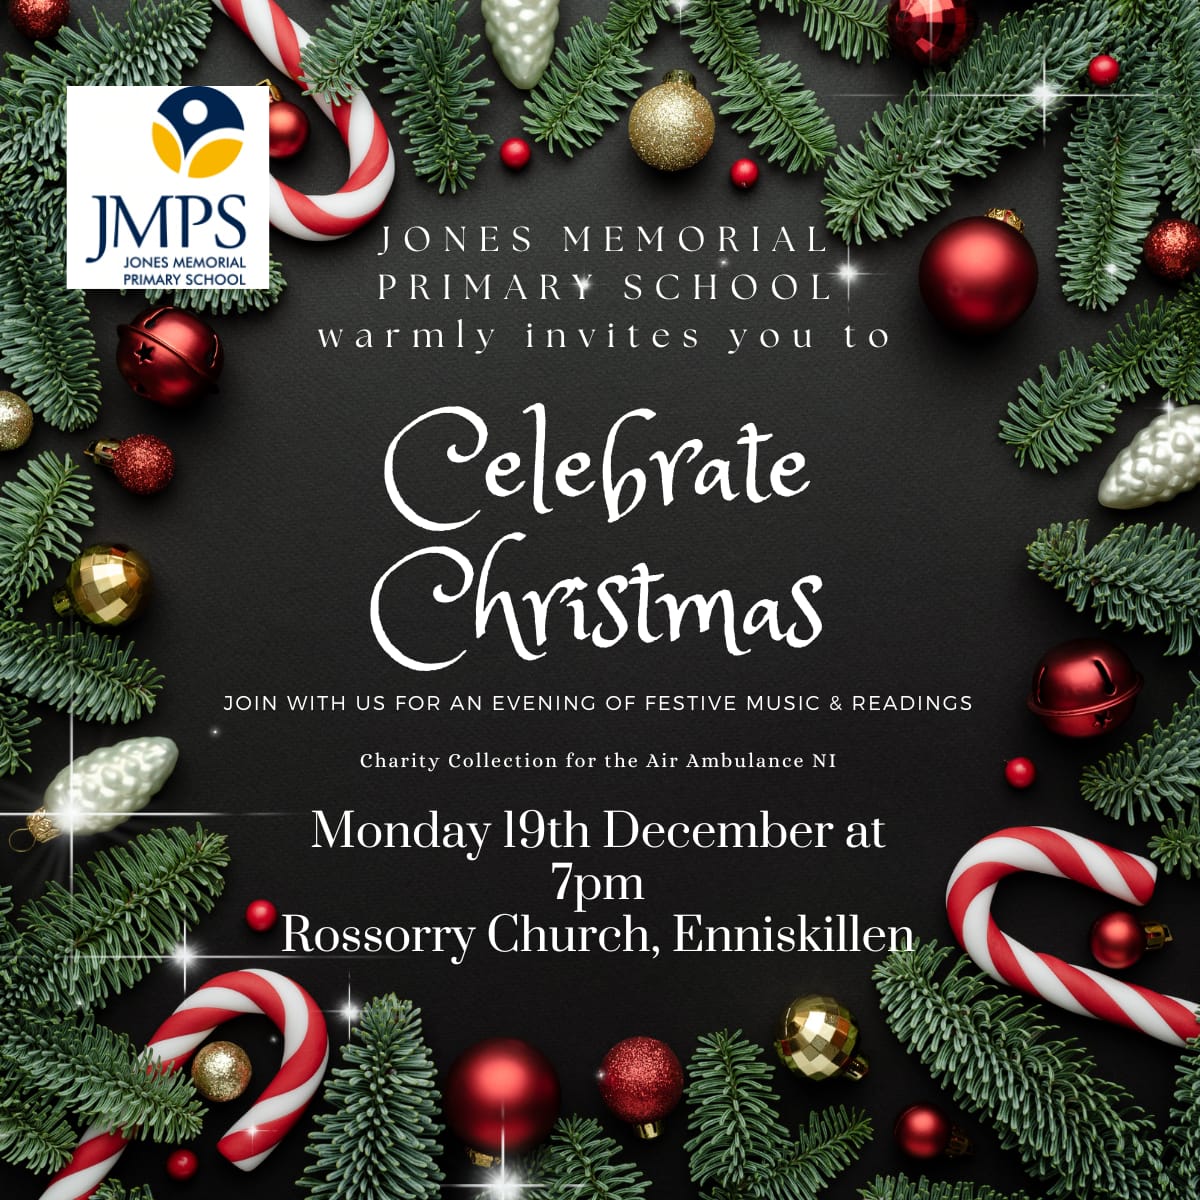 JMPS – Jones Memorial Primary School